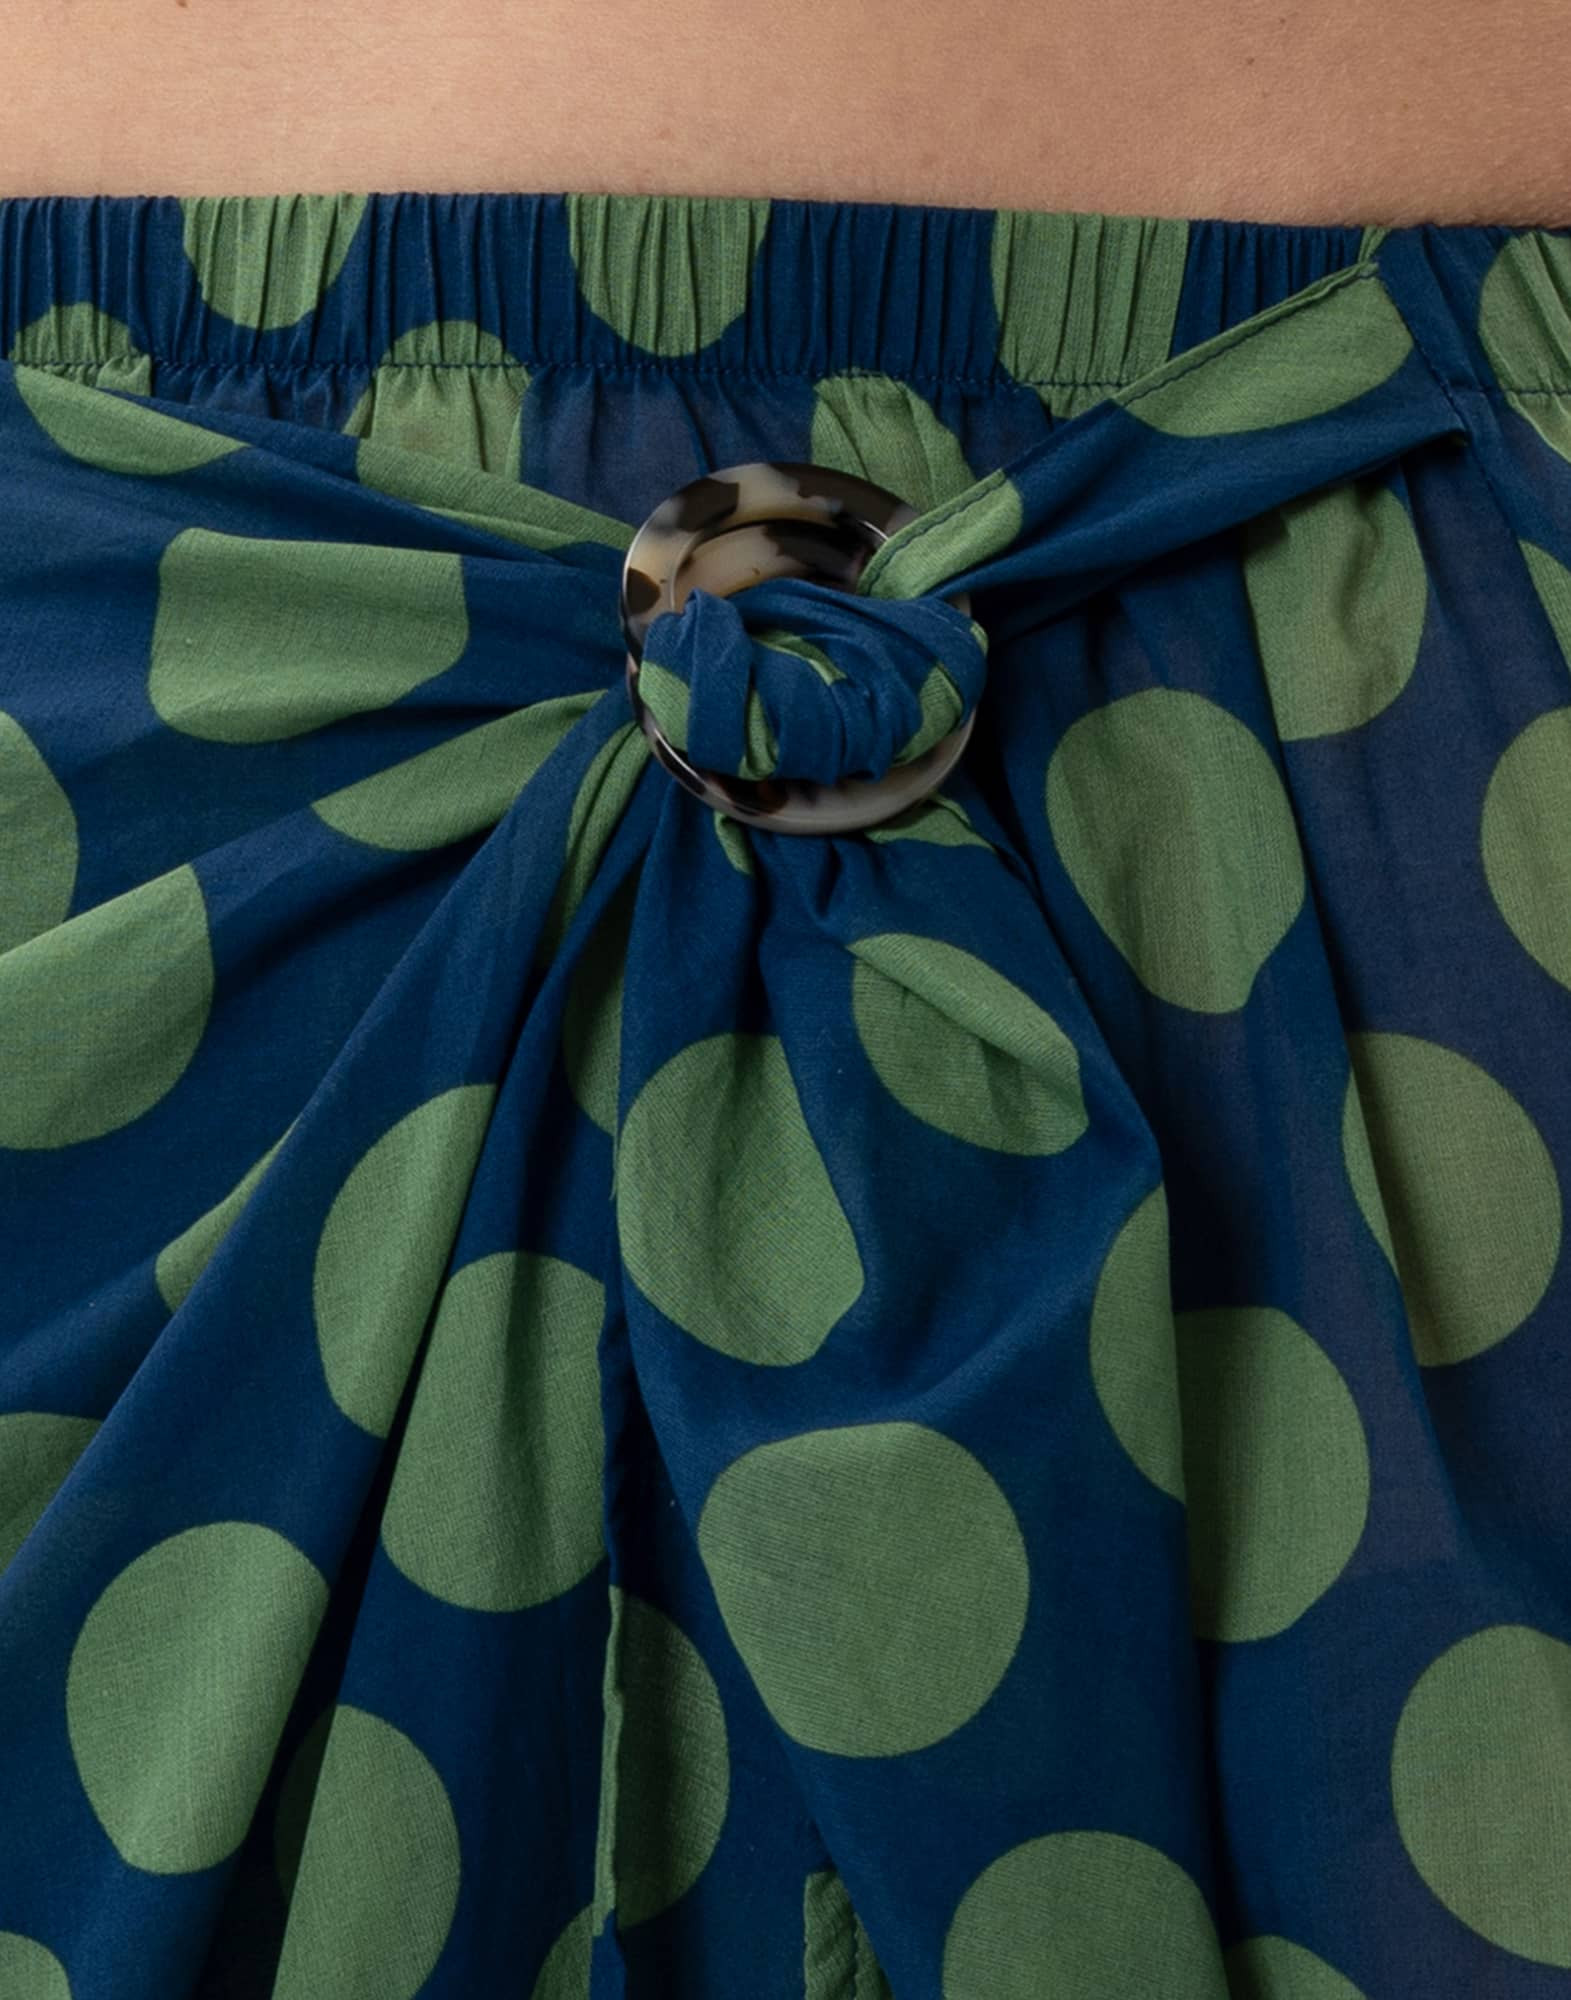 Polka dot printed sarong skirt in 100% cotton RIVA 780 green